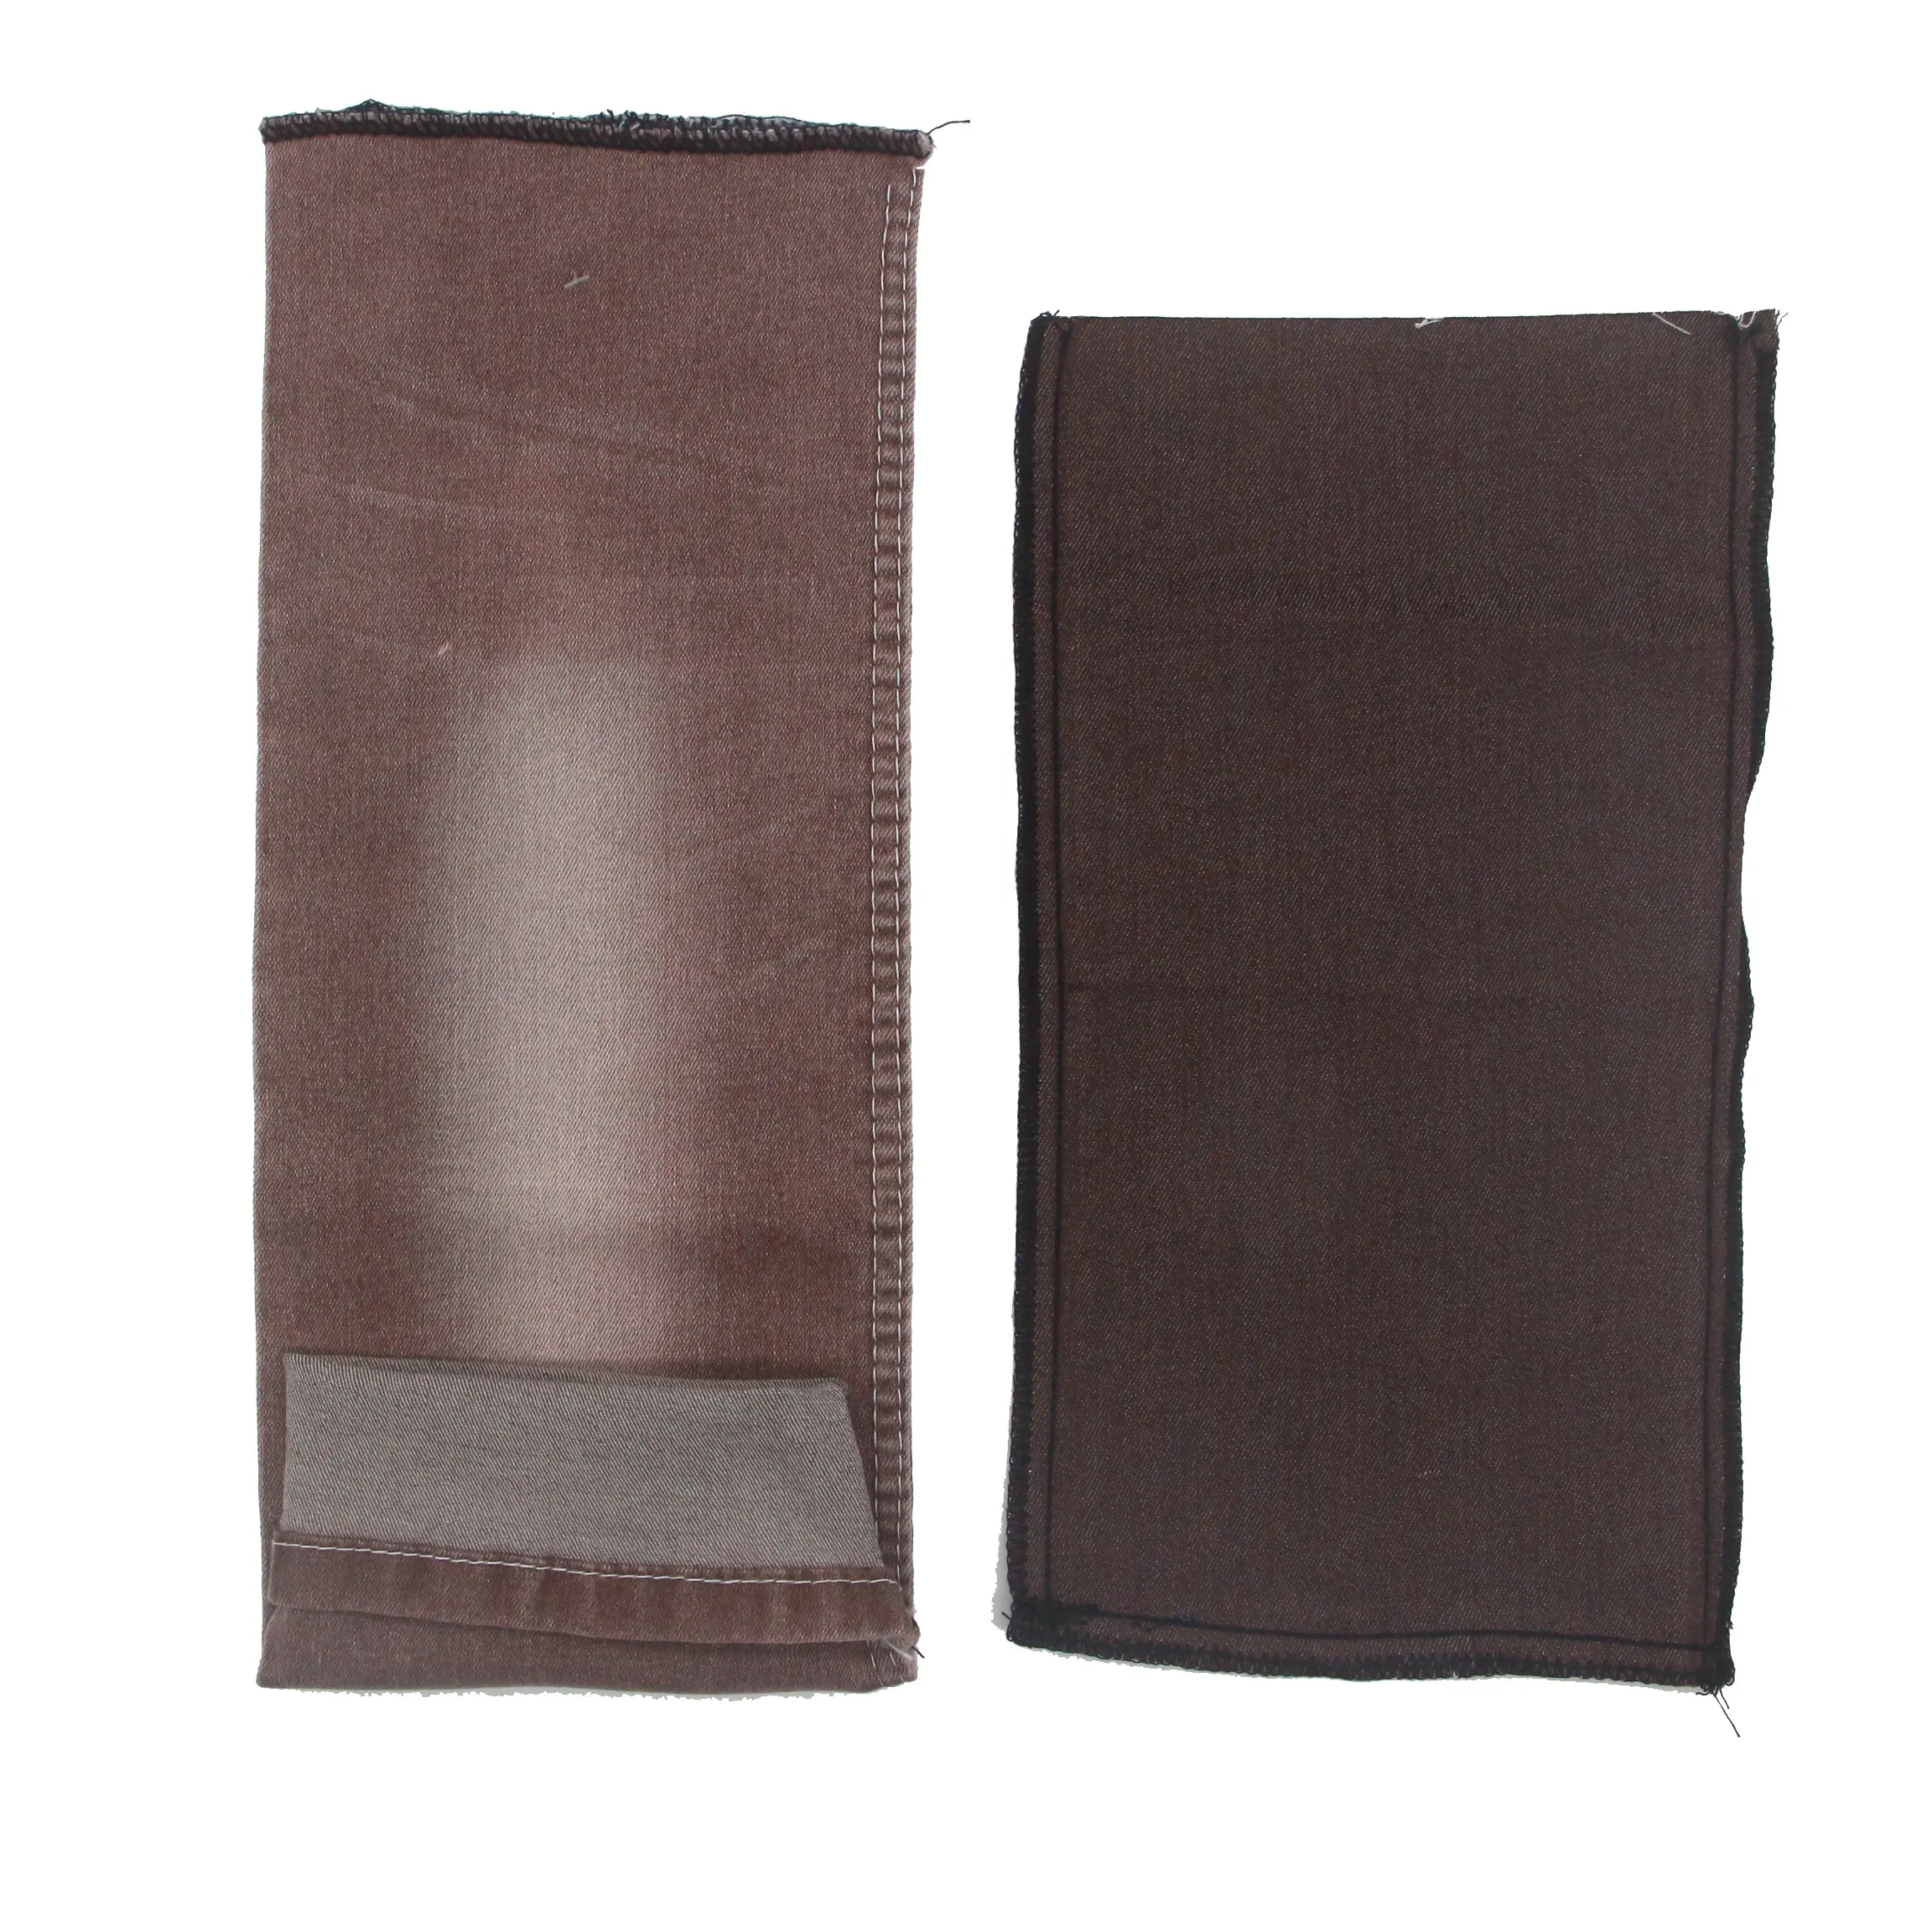 Calças jeans de algodão elástico para tecido lavado, tecido liso tingido com fio para tecido de roupas YH85-20